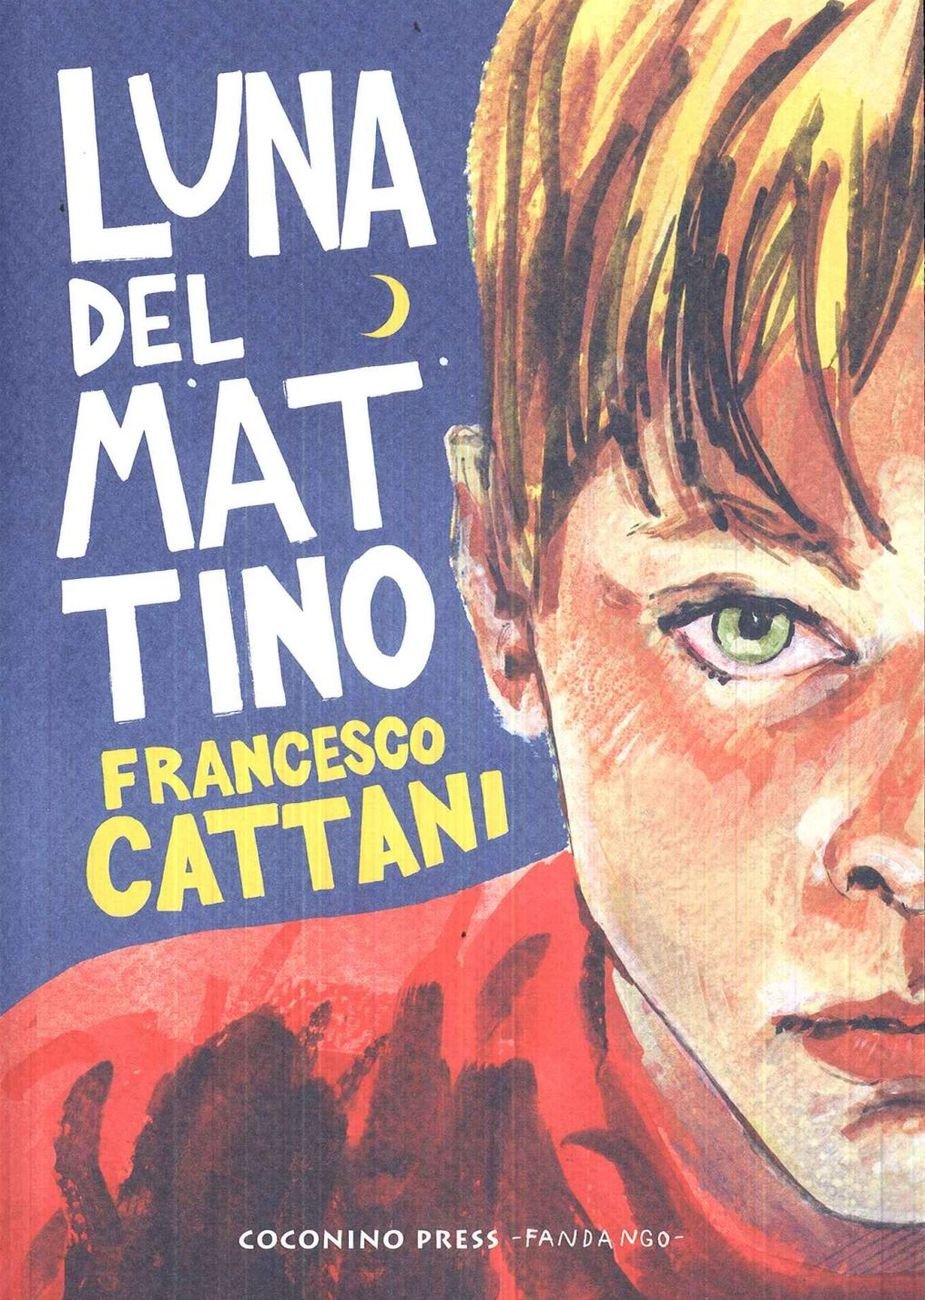 Francesco Cattani – Luna del mattino (Coconino Press Fandango, 2017)